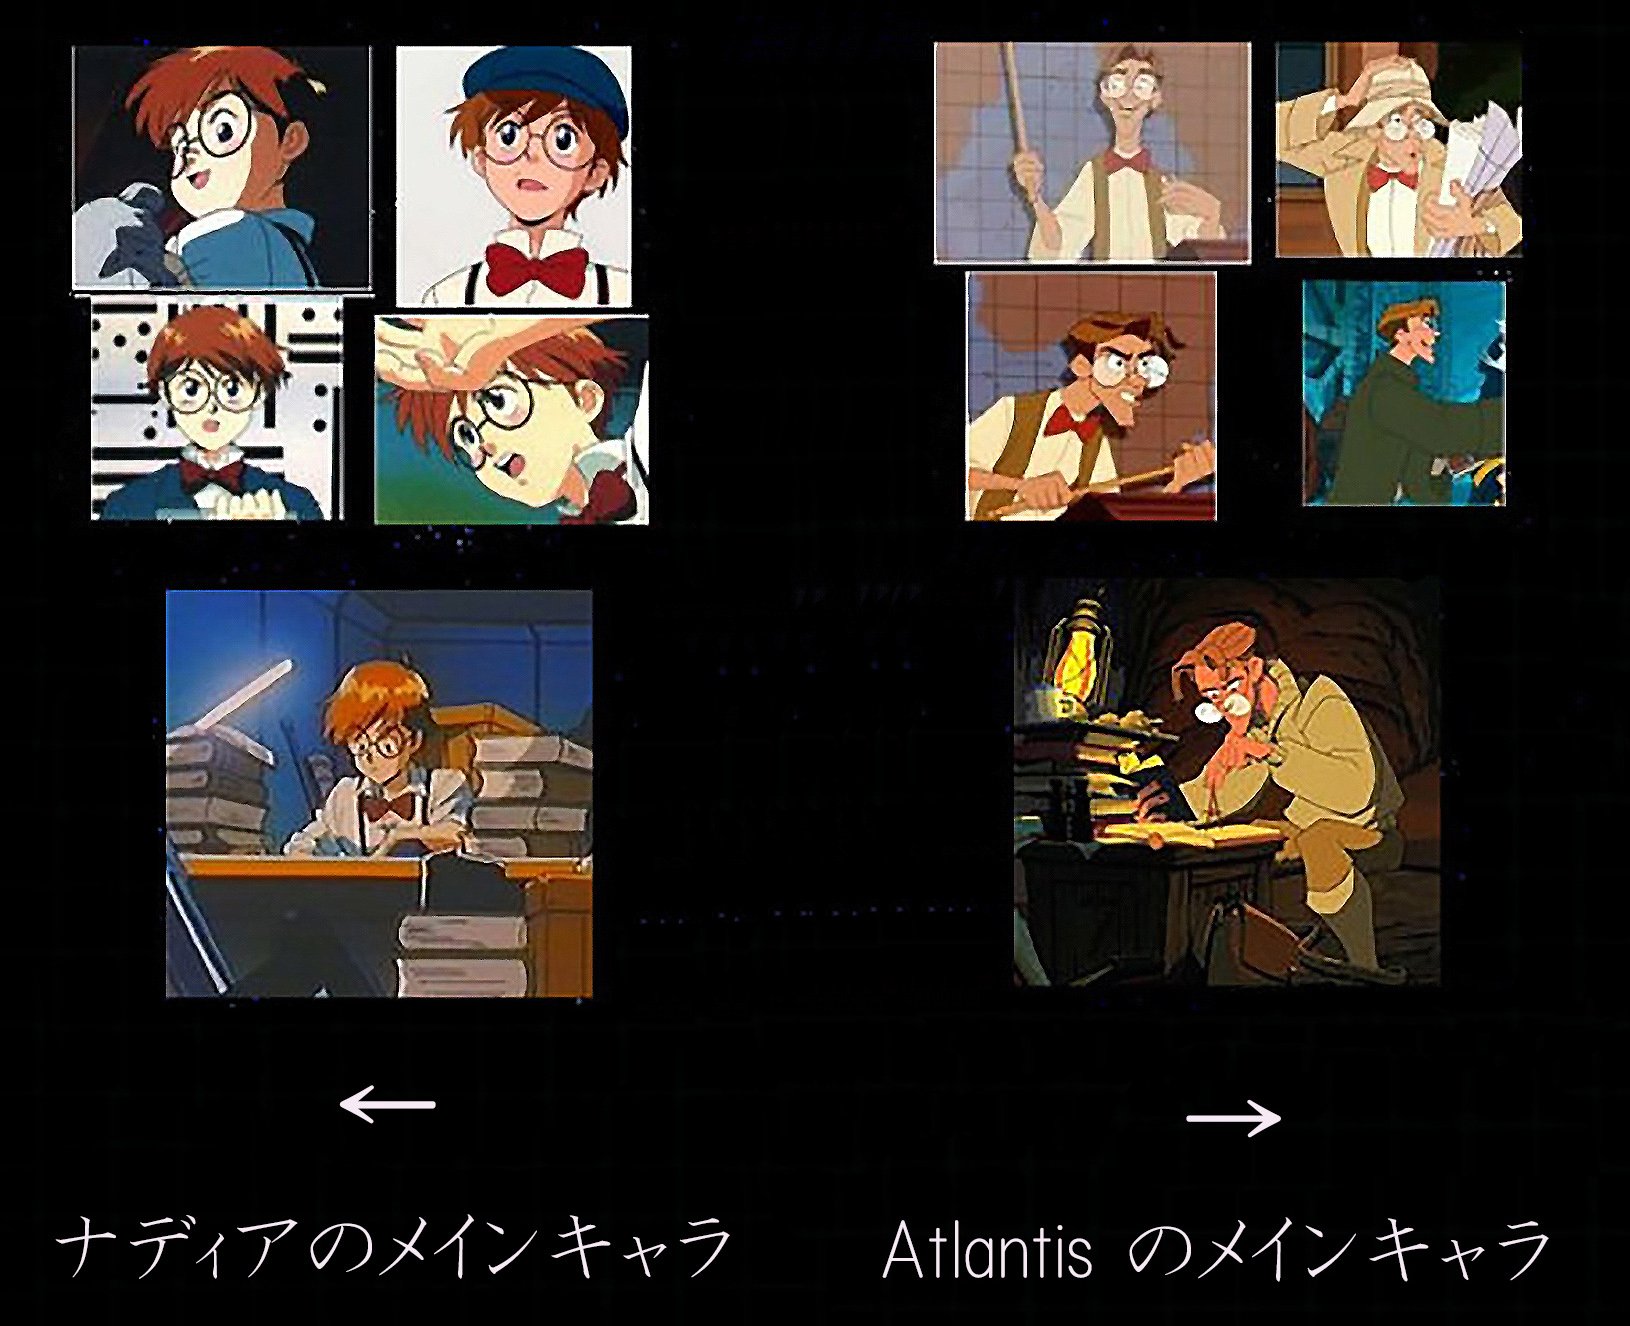 Disco Disney のパクリ映画を語ろう 今日はリプで Lion King がジャングル帝王 の完全なコピーだと話したが Disney S Atlantis 01 はご存知 それは ふしぎの海のナディア 1990 のパクリの極みだ キャラの外見や性格 舞台 話の内容 名シーン